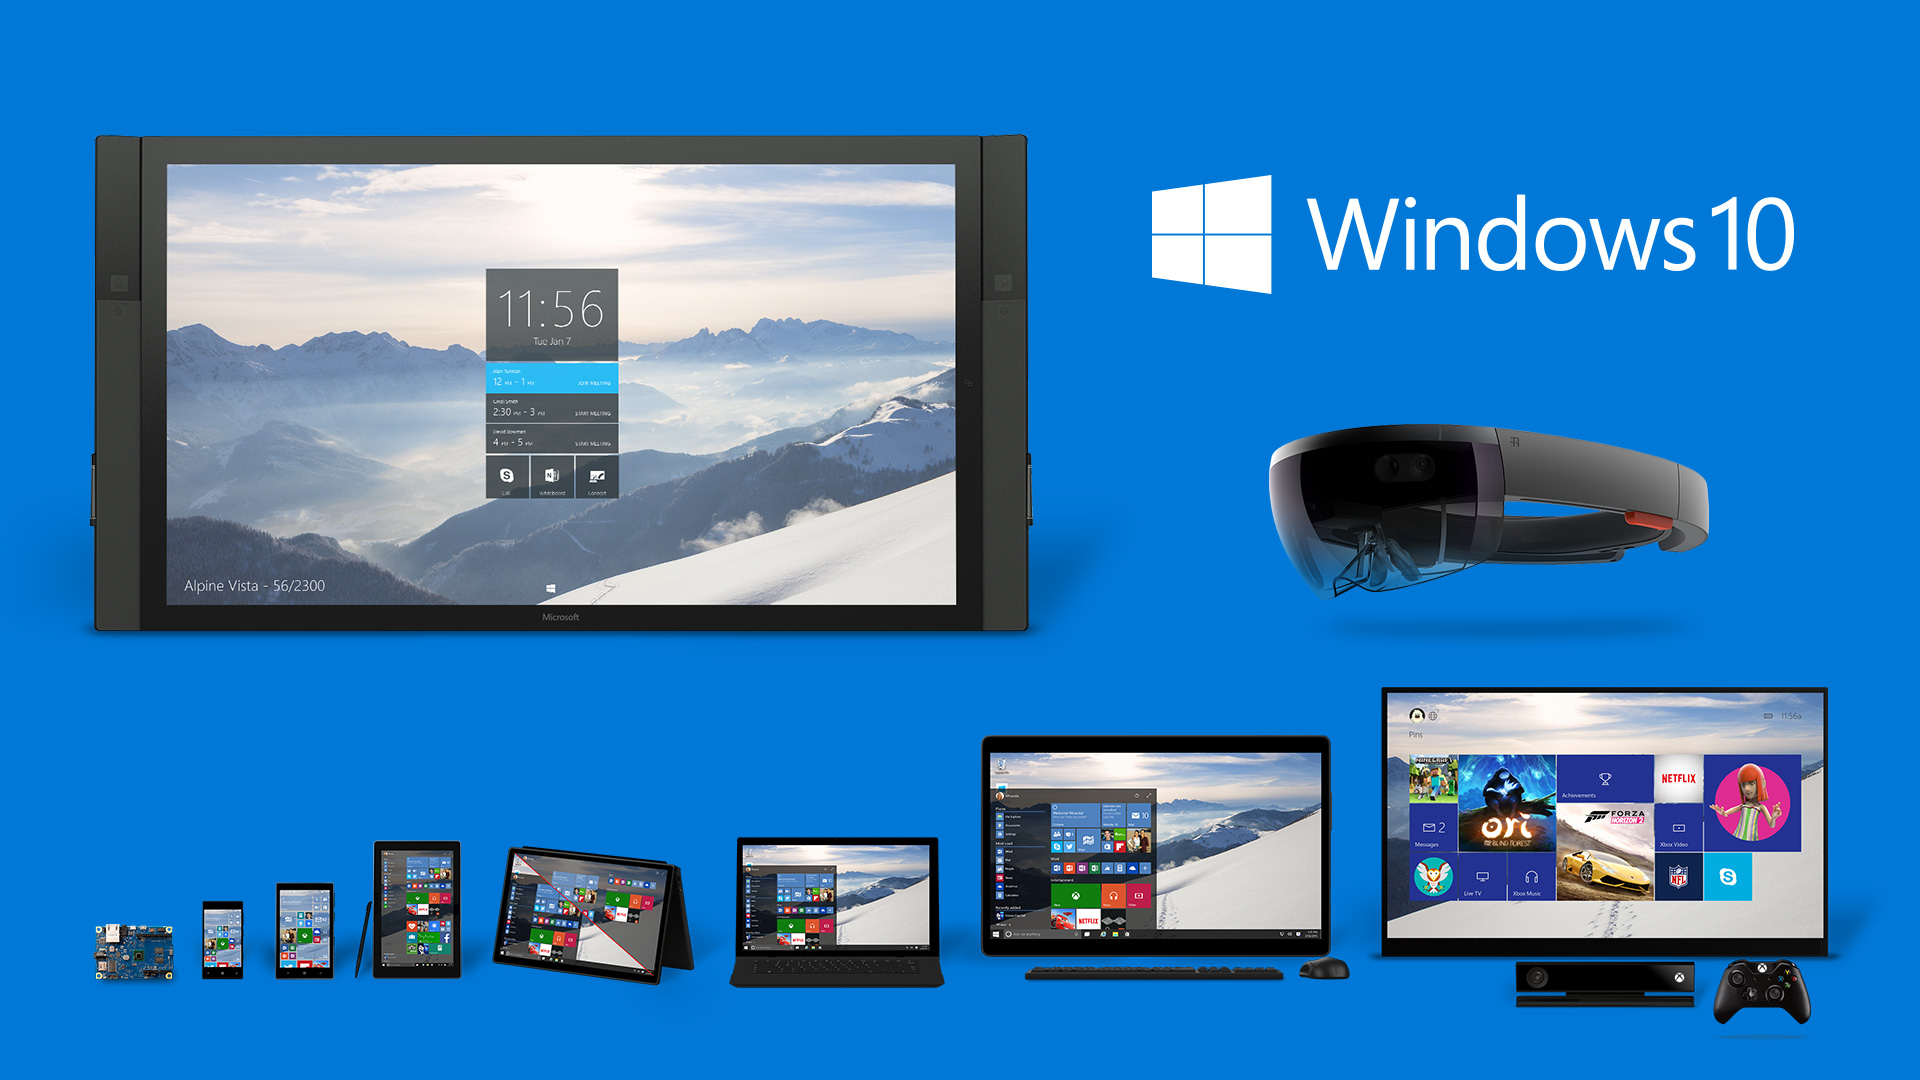 Windows 10 Product Family | Windows 10 | ทุกสิ่งที่คุณควรรู้ สำหรับการอัพเกรดเป็น Windows 10 อะไรหายไป? อะไรยังอยู่บ้าง? มาดูกัน